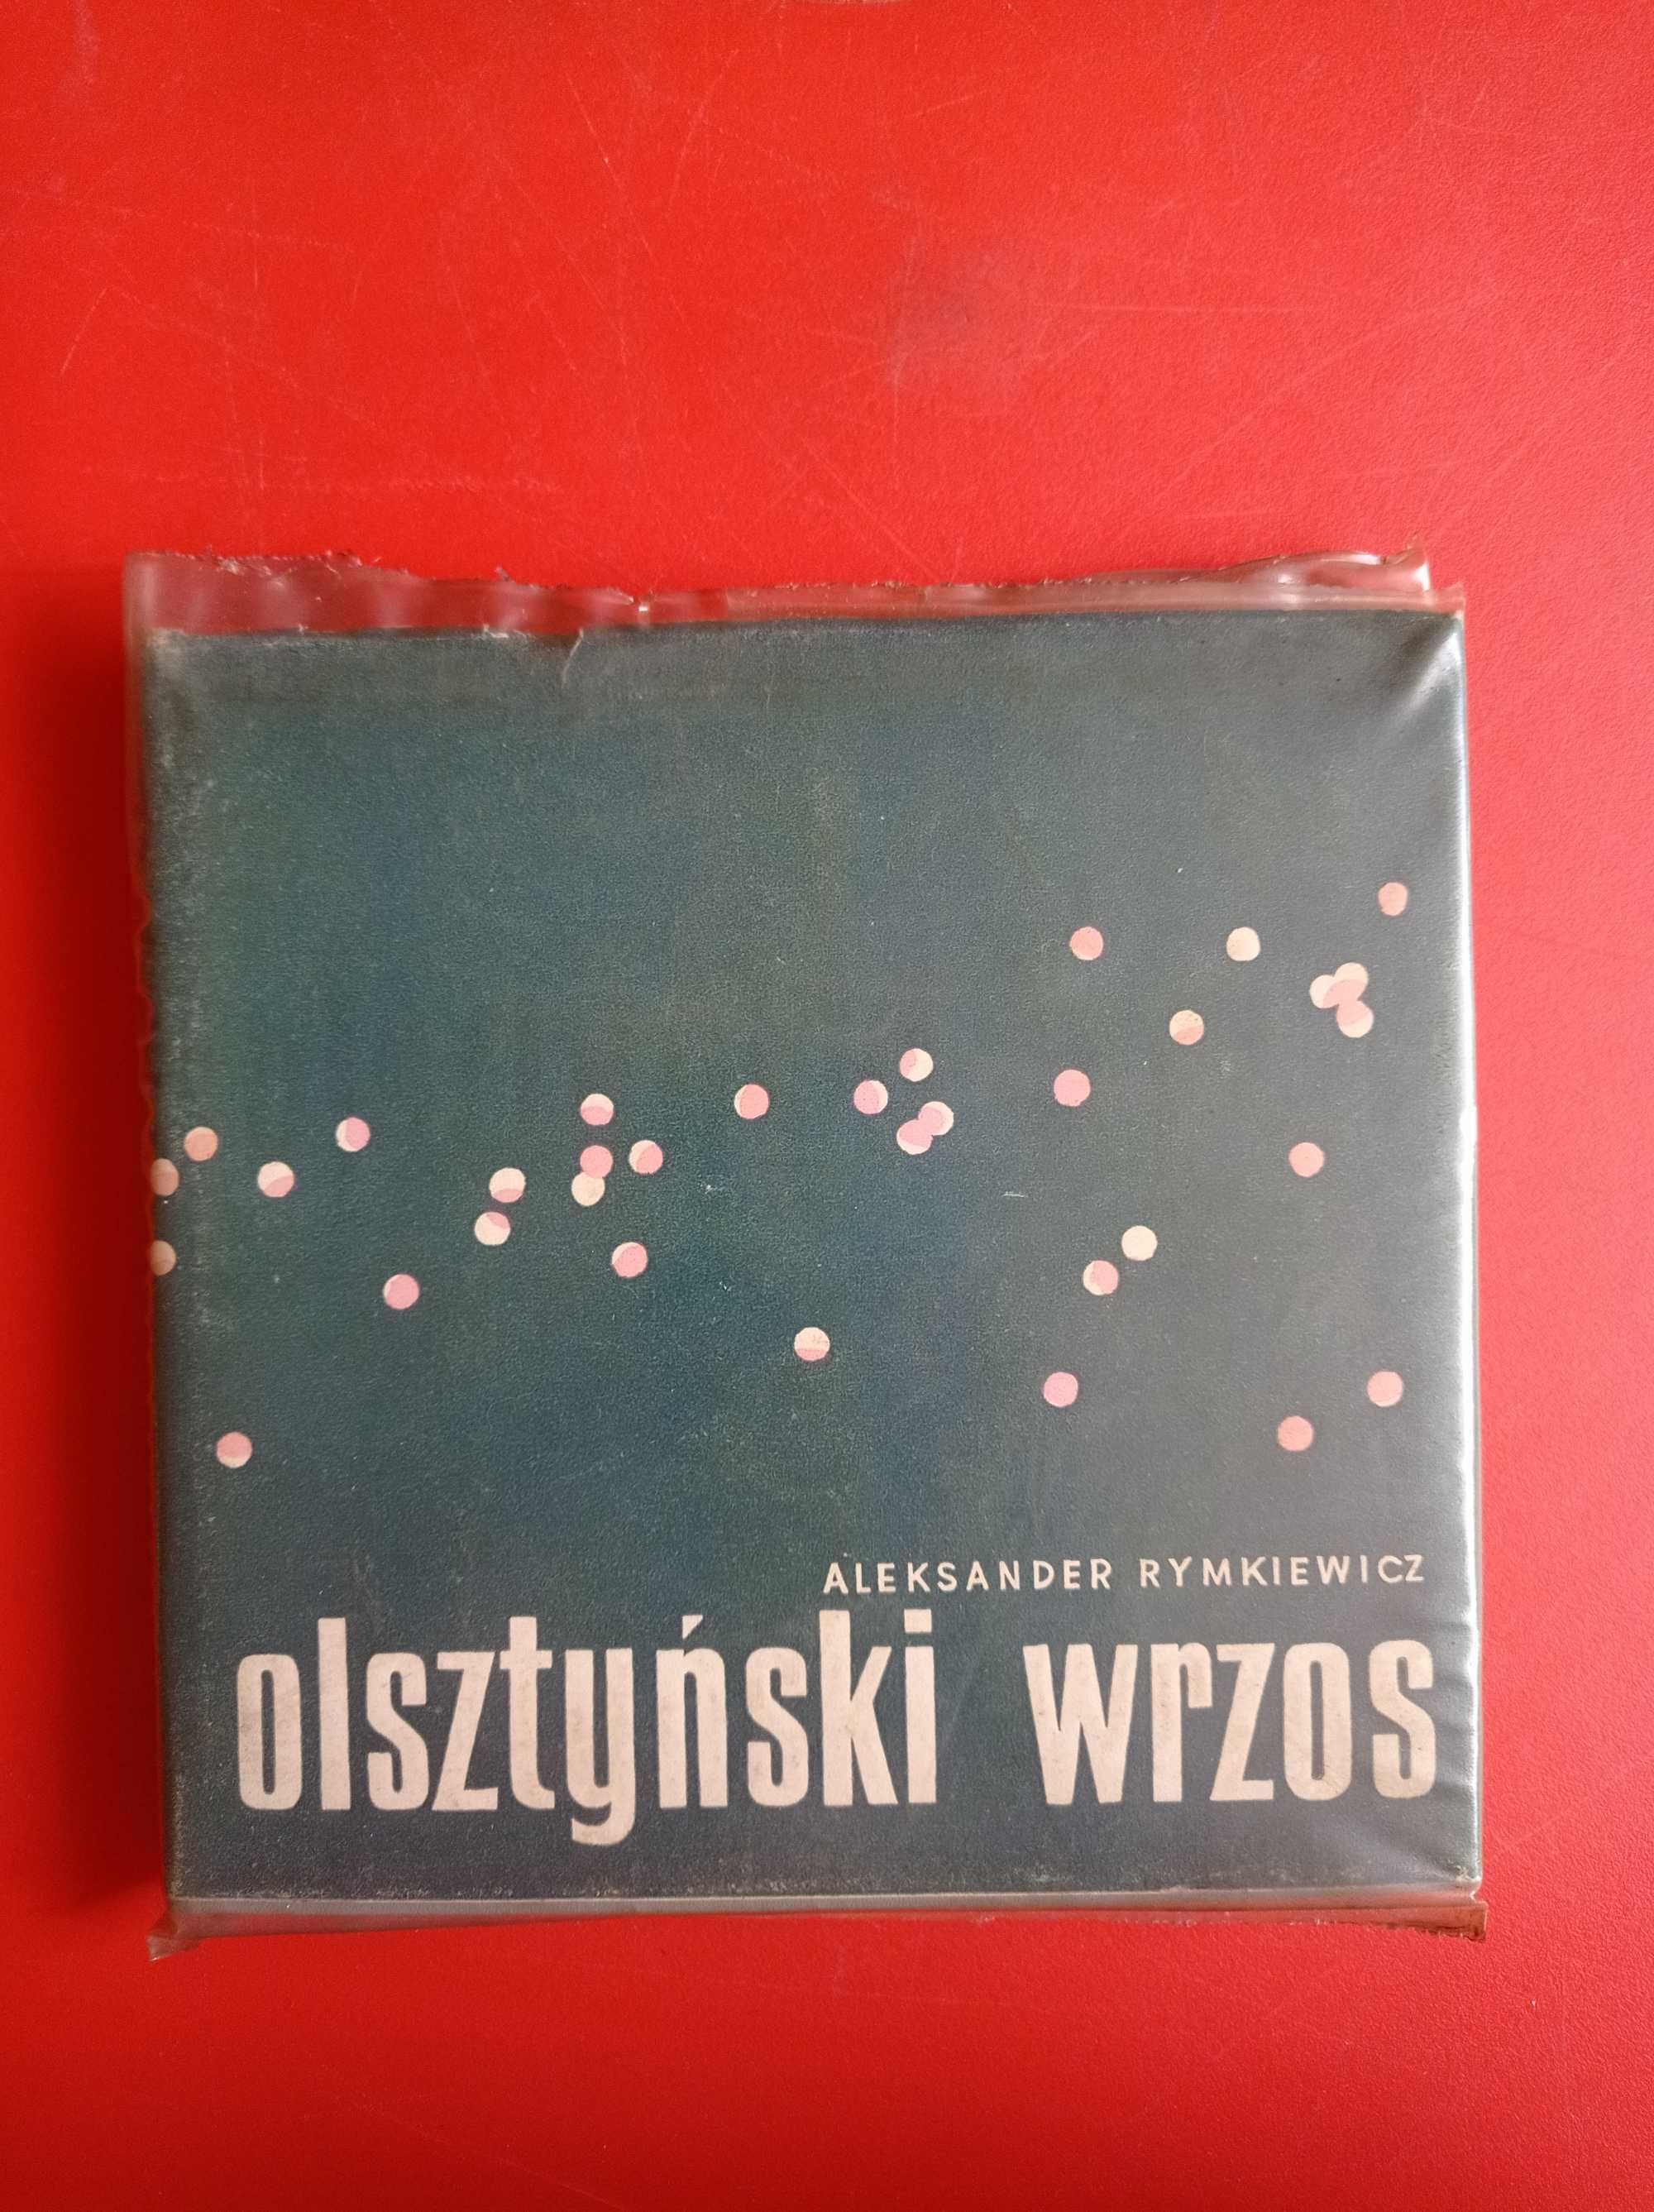 Olsztyński wrzos, Aleksander Rymkiewicz